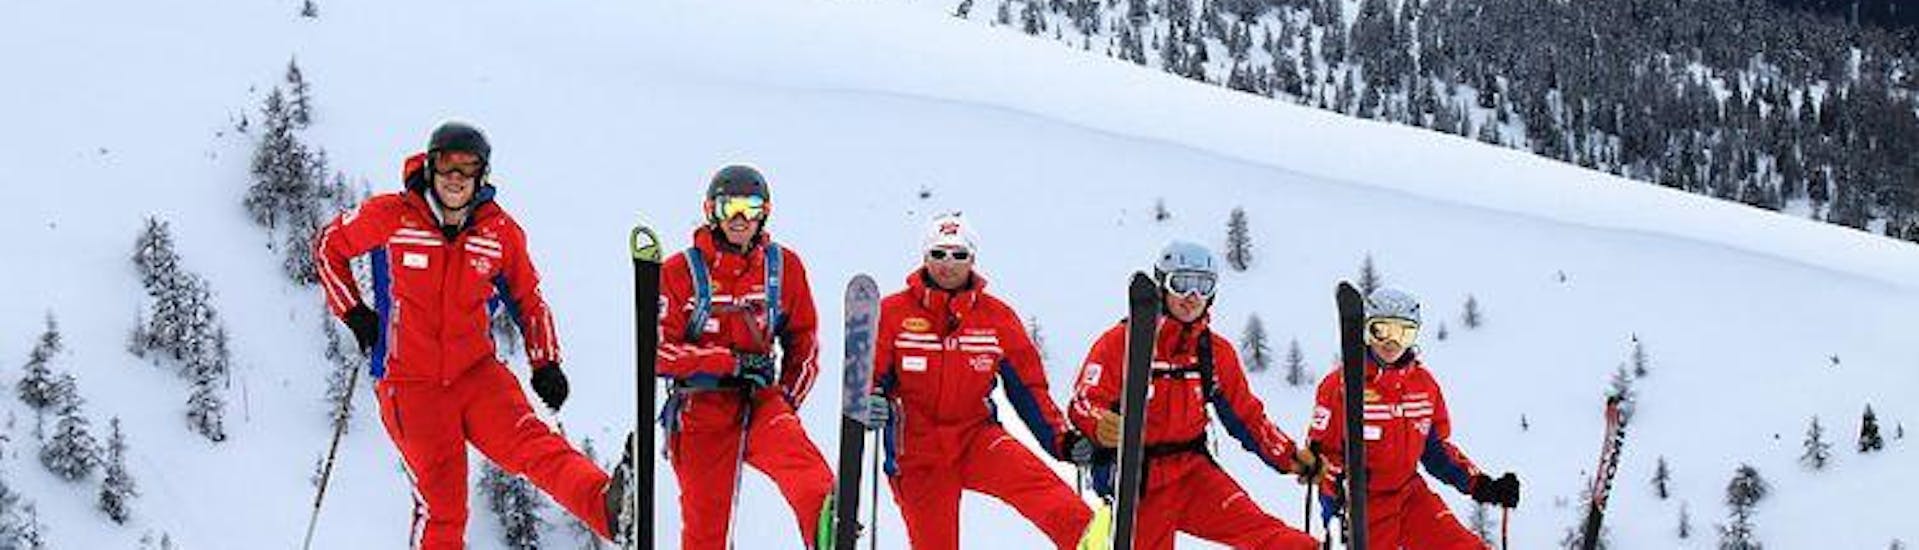 Eine Gruppe von Skilerhern hat Spaß im Schnee während des Kinder-Skikurses für leicht Fortgeschrittene mit der Skischule Qualitäts-Skischule Brunner in Bad Kleinkirchheim.